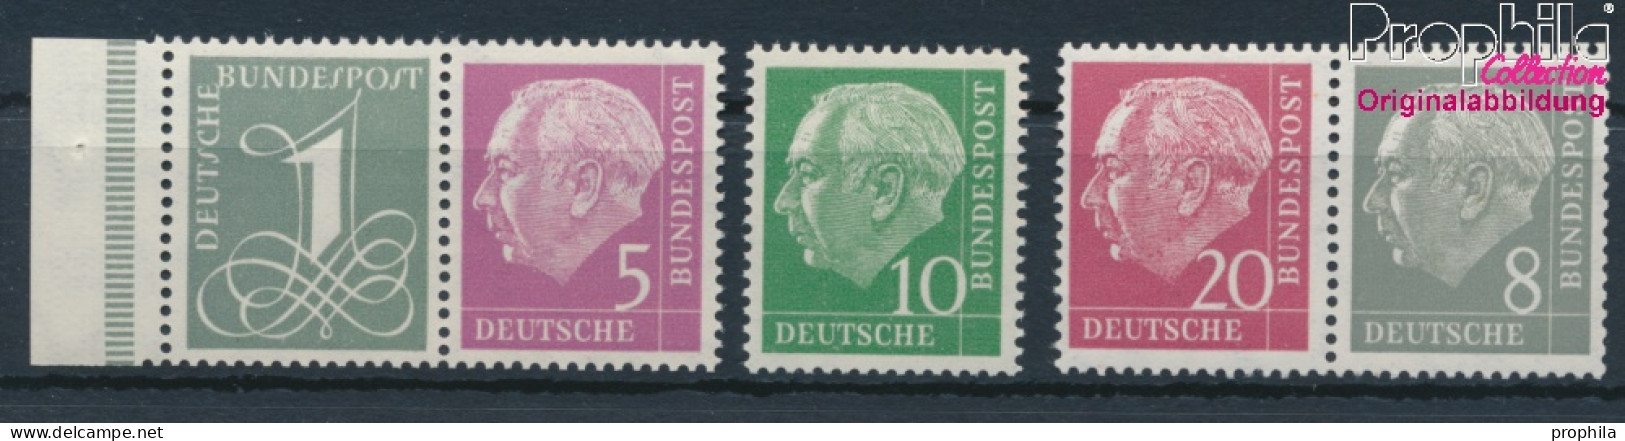 BRD 179Y,182Y,183Y,185Y,285Y (kompl.Ausg.) Liegendes Wasserzeichen Postfrisch 1960 Heuss I (10347826 - Neufs